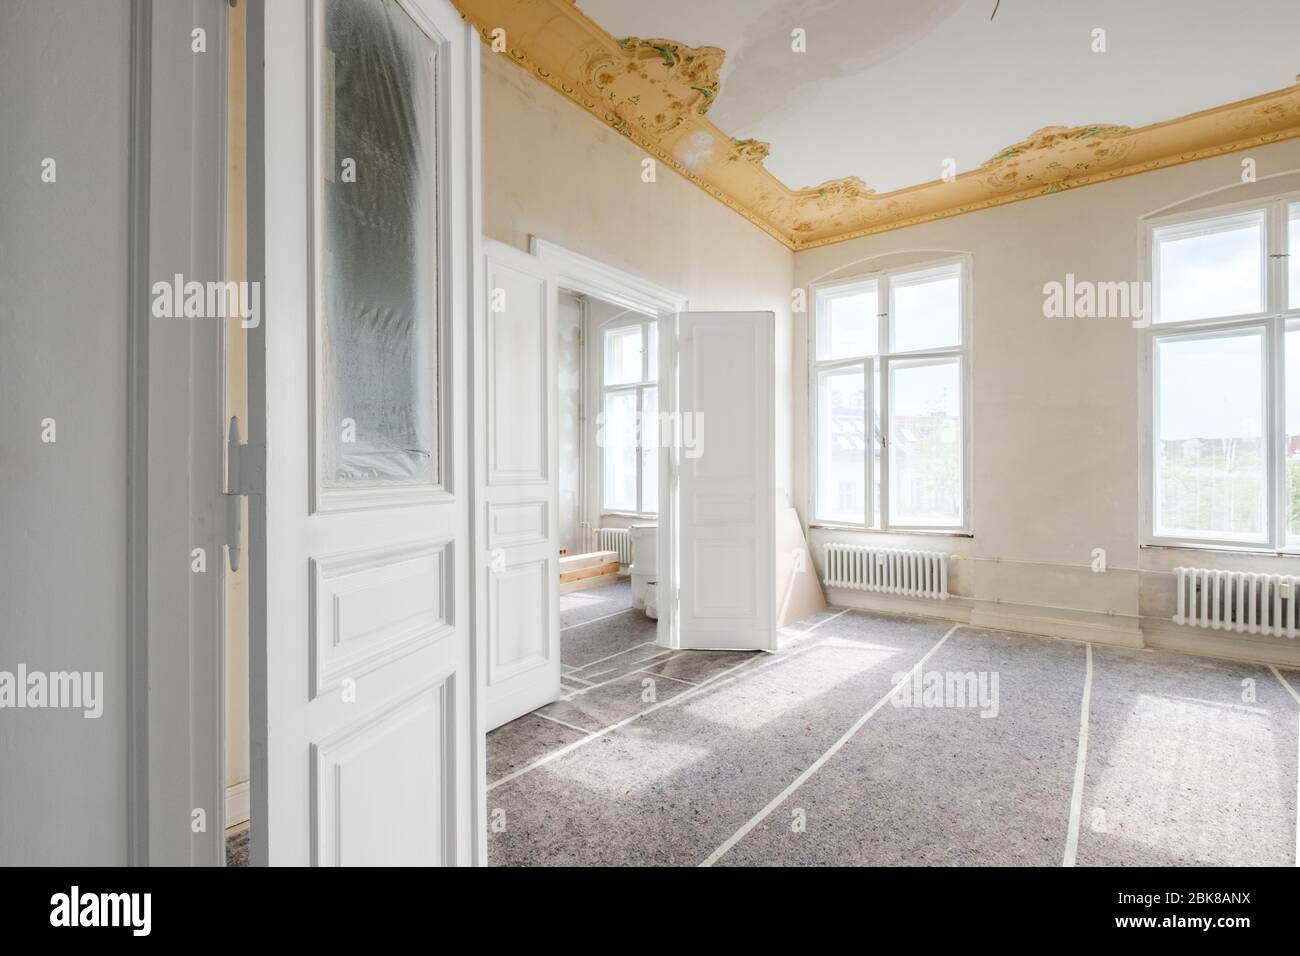 Leere Wohnung während der Renovierung, Zimmer renovieren - Stockfoto